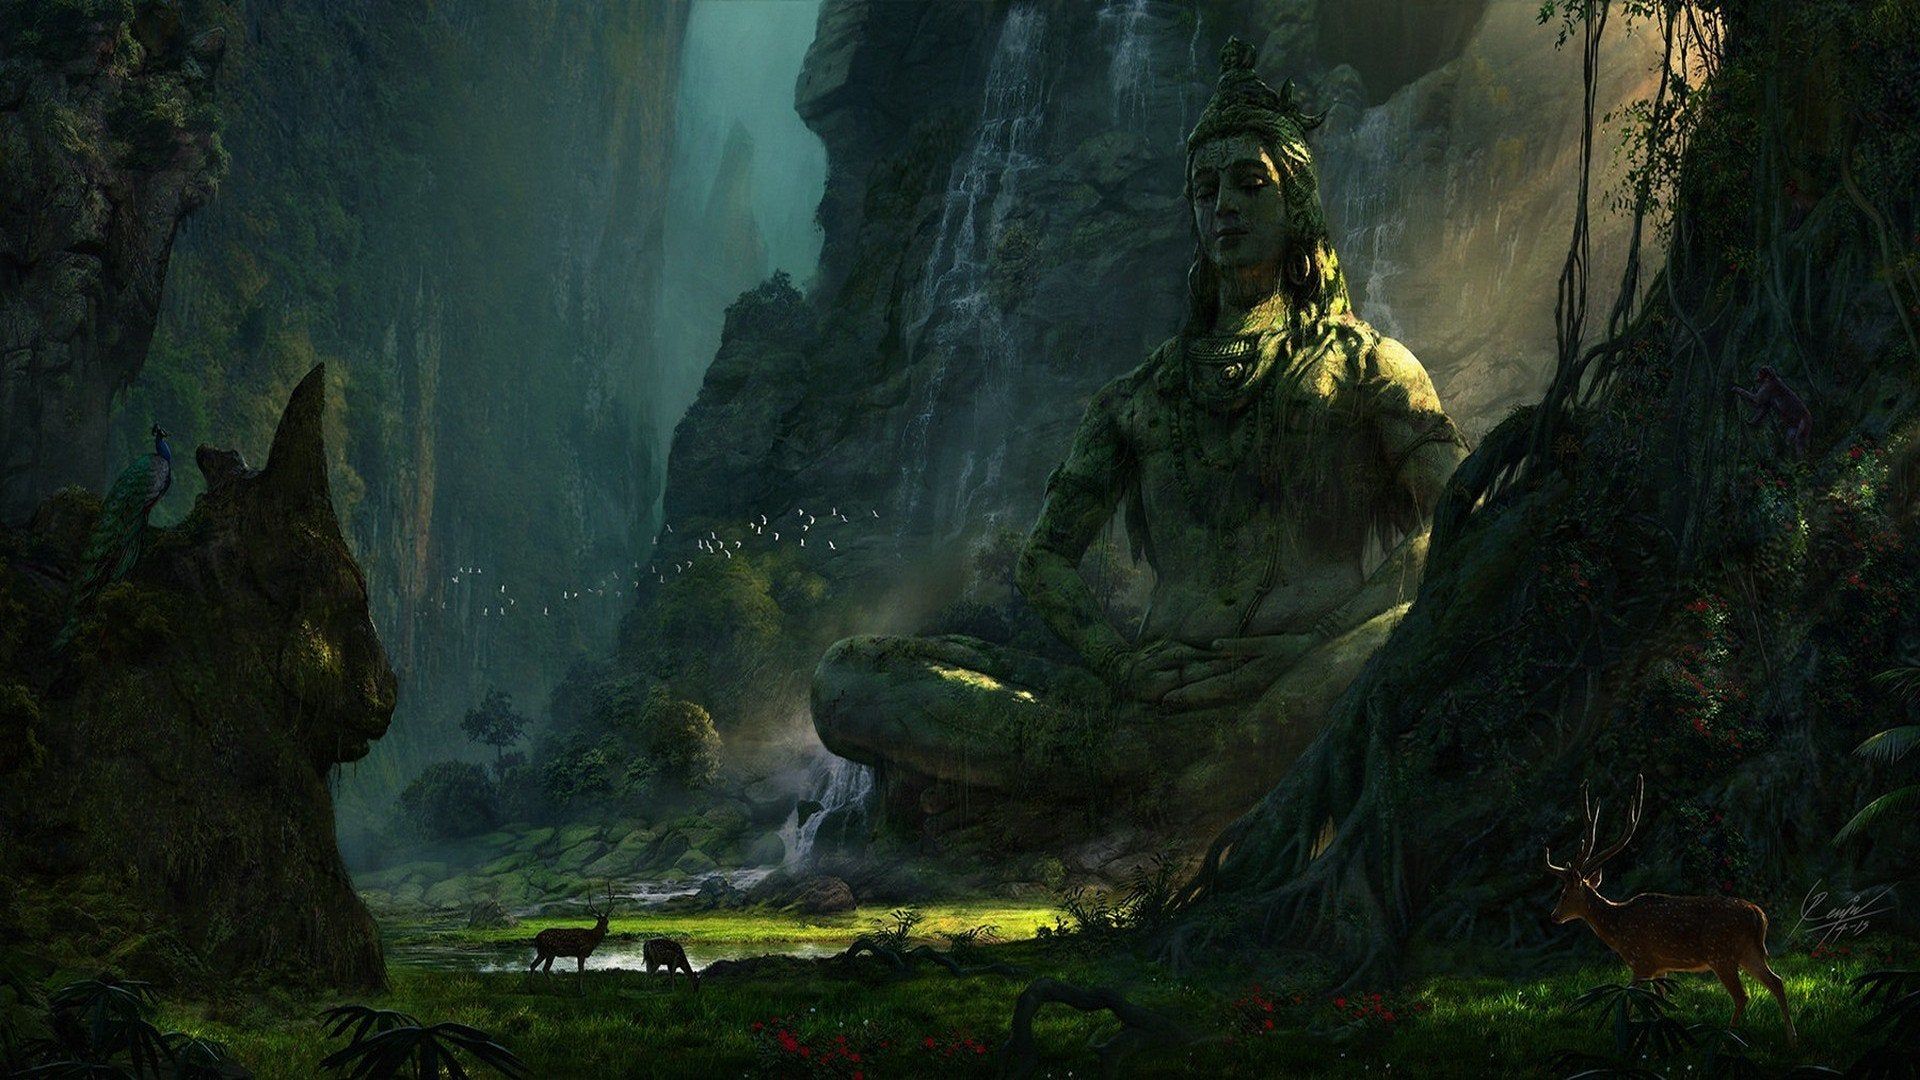 Unexplored Ruins (Lord Shiva)